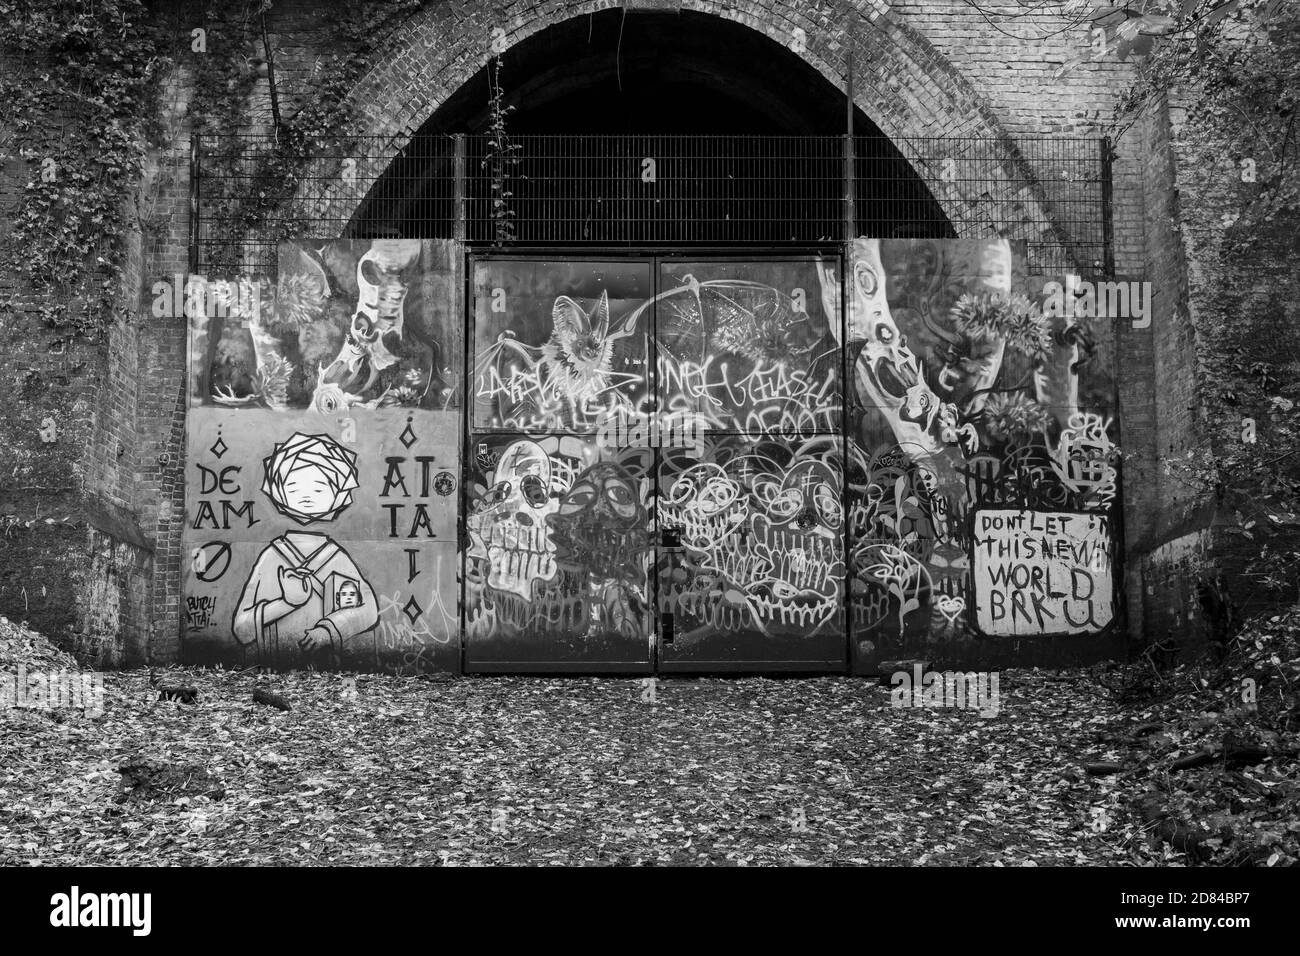 Graffiti couvre le tunnel fermé qui faisait autrefois partie du chemin de fer Nunhead à Crystal Palace (High Level) qui passait auparavant par Sydenham Hill Woods. Le lit de la piste peut être suivi jusqu'à un tunnel fermé et disused qui est maintenant un roost de chauve-souris enregistré, le 25 octobre 2020, à Londres, en Angleterre. Banque D'Images